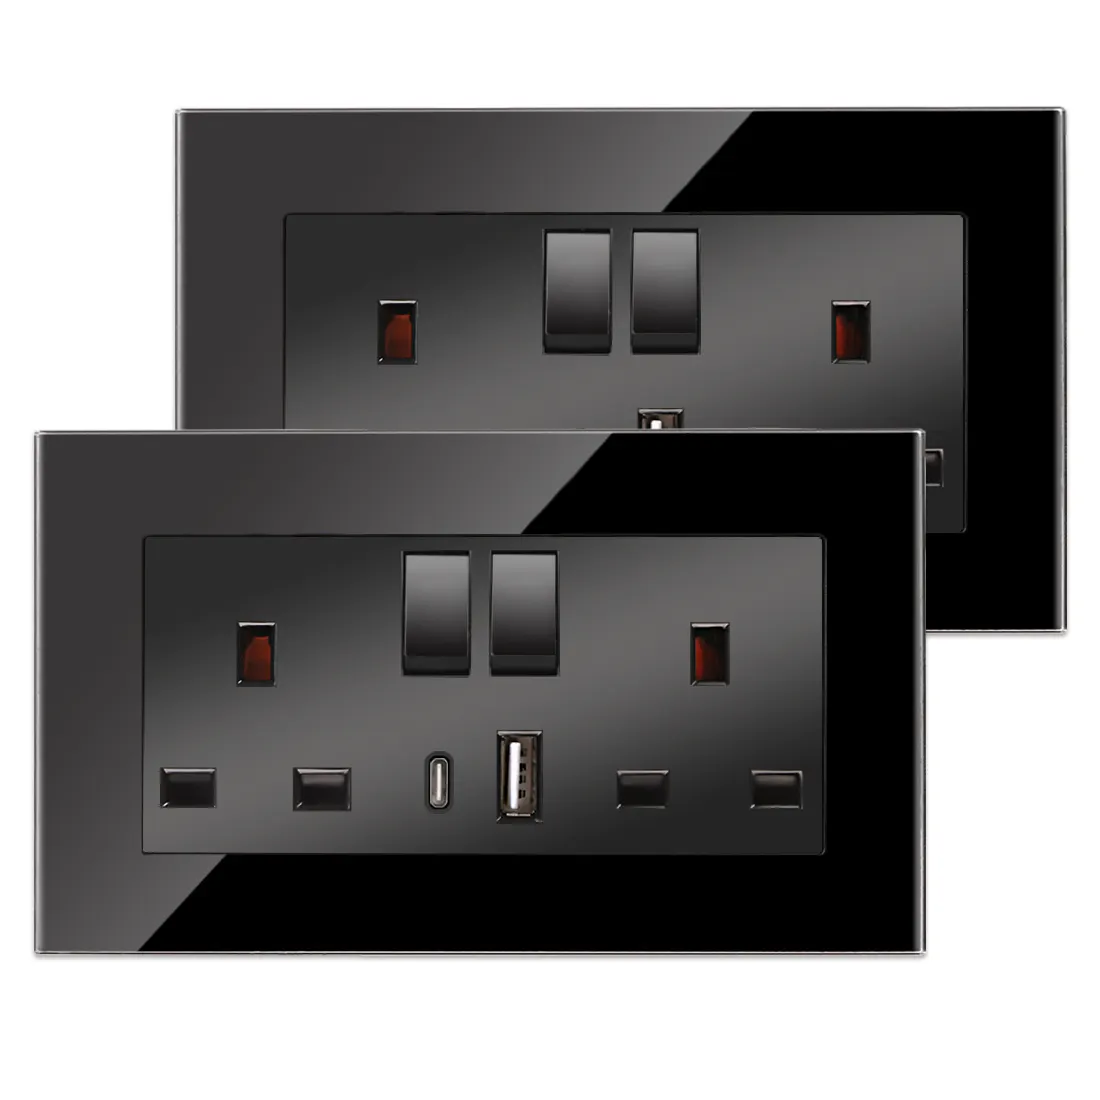 Bingoelec İngiltere standart USB tip C elektrikli düğme anahtarı duvar soket 13A güç çıkışı